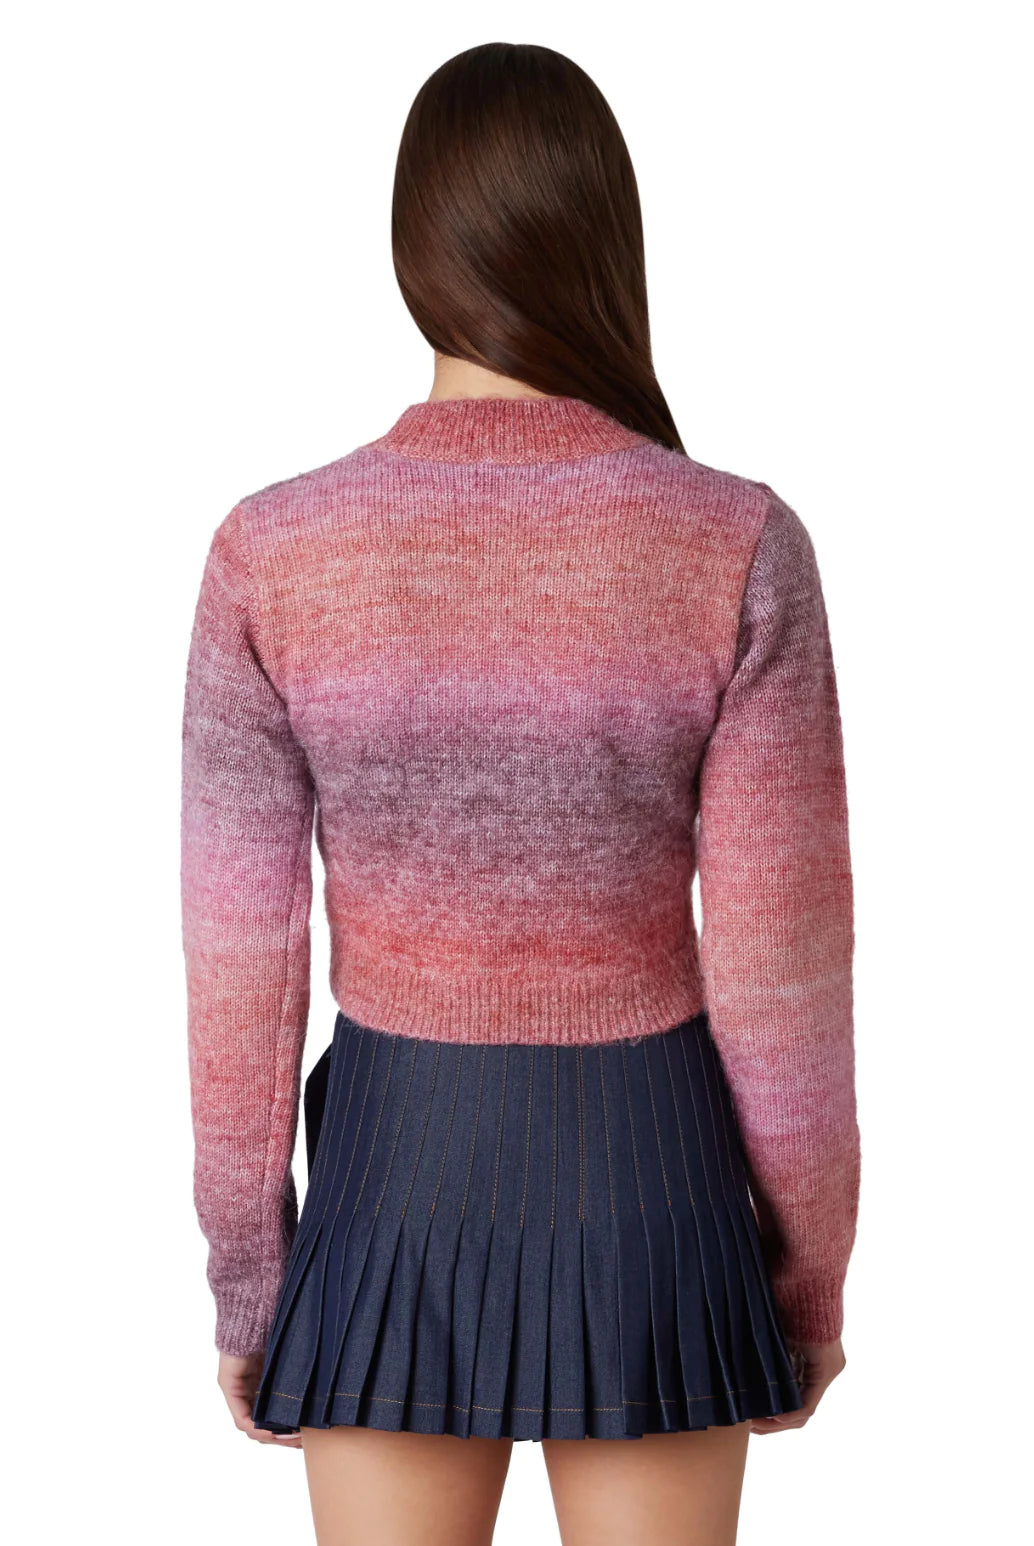 Aspen Sweater in Dusty Pink